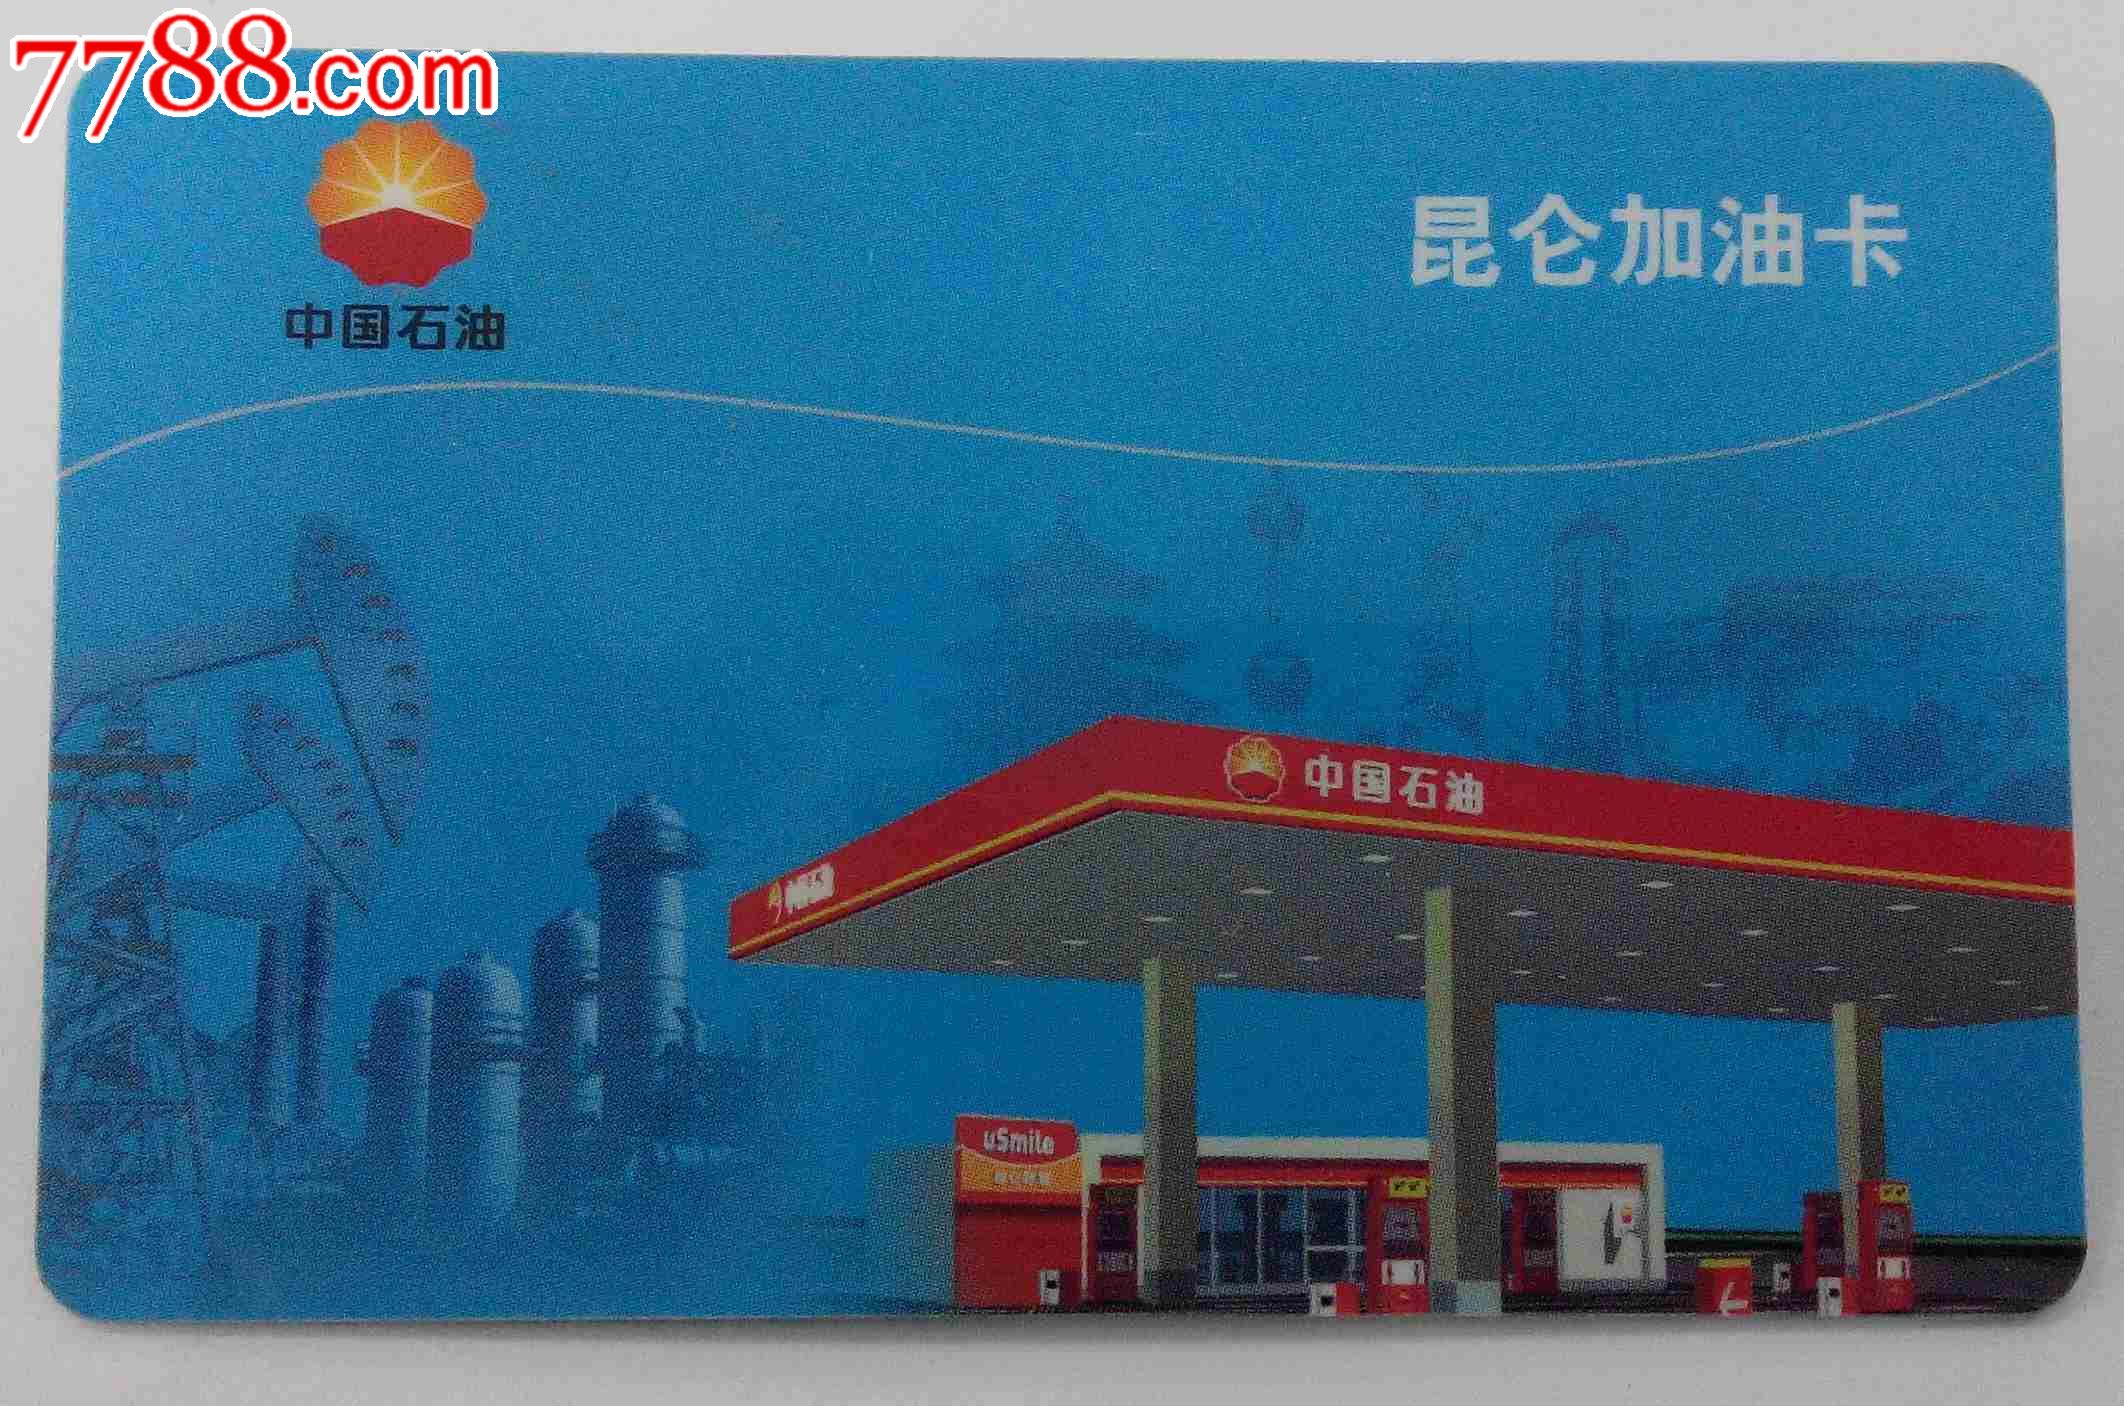 中国石油-昆仑加油卡(hh:123.3)_缴费\/查询卡_